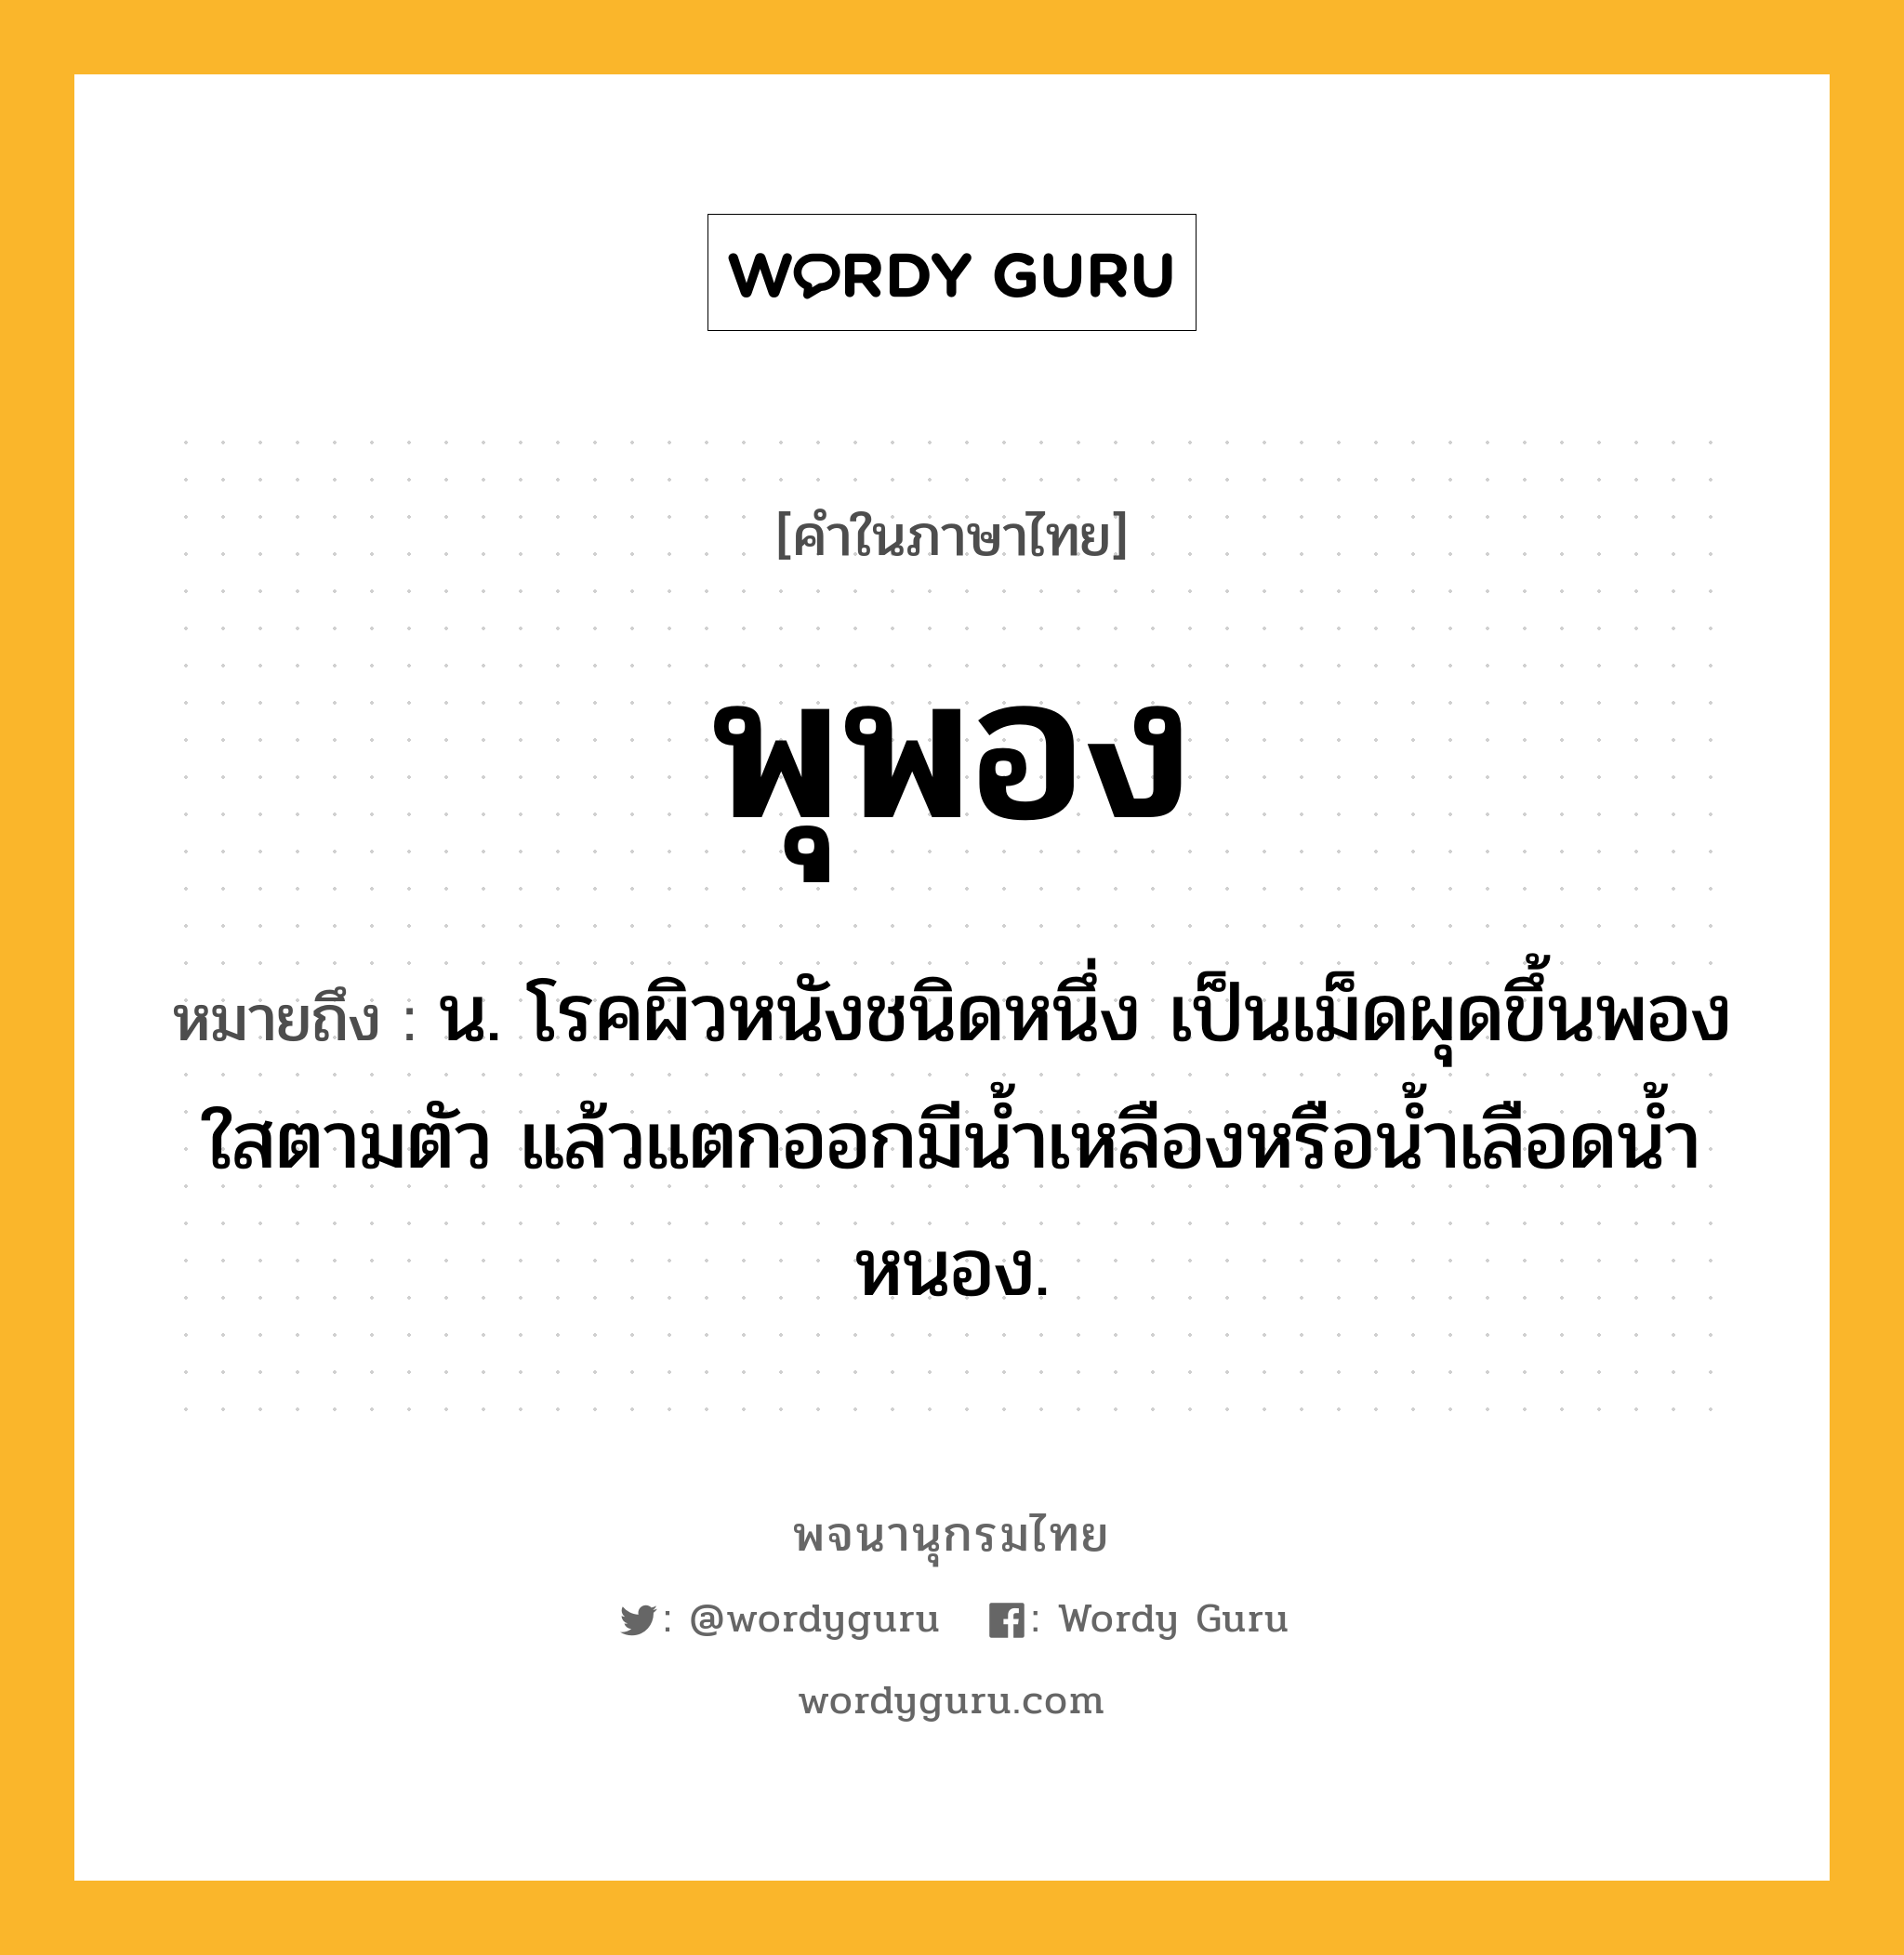 พุพอง ความหมาย หมายถึงอะไร?, คำในภาษาไทย พุพอง หมายถึง น. โรคผิวหนังชนิดหนึ่ง เป็นเม็ดผุดขึ้นพองใสตามตัว แล้วแตกออกมีนํ้าเหลืองหรือนํ้าเลือดนํ้าหนอง.